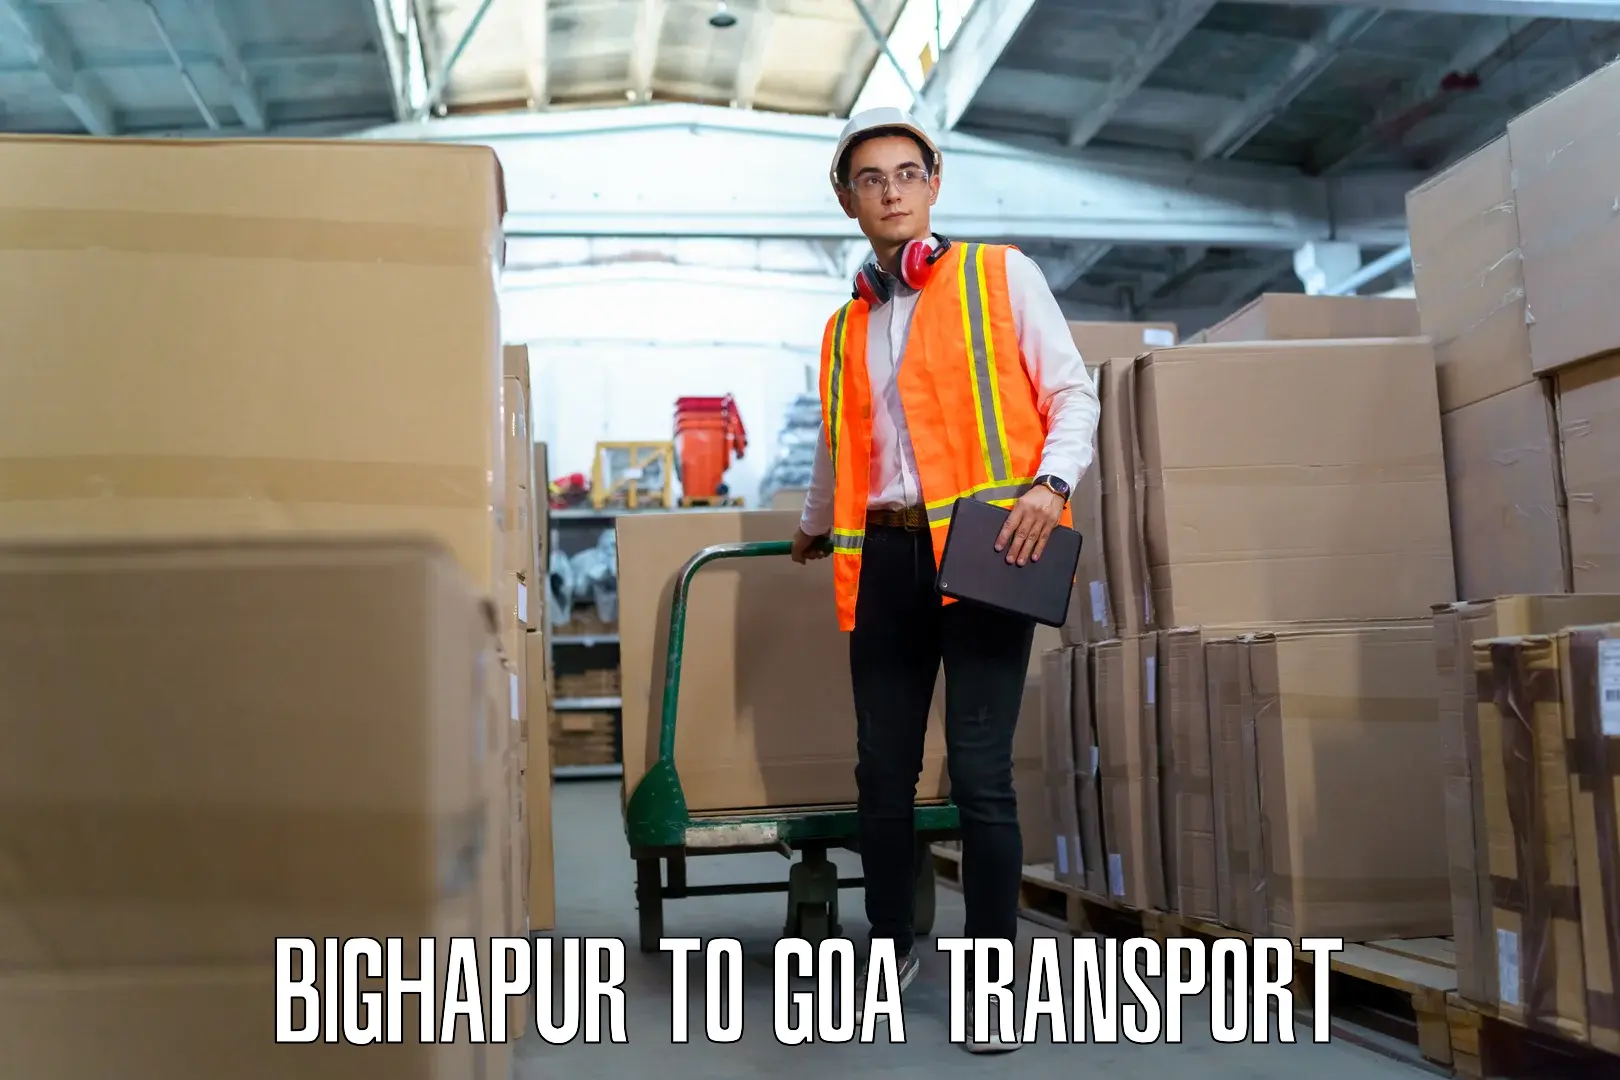 Furniture transport service Bighapur to Sanvordem